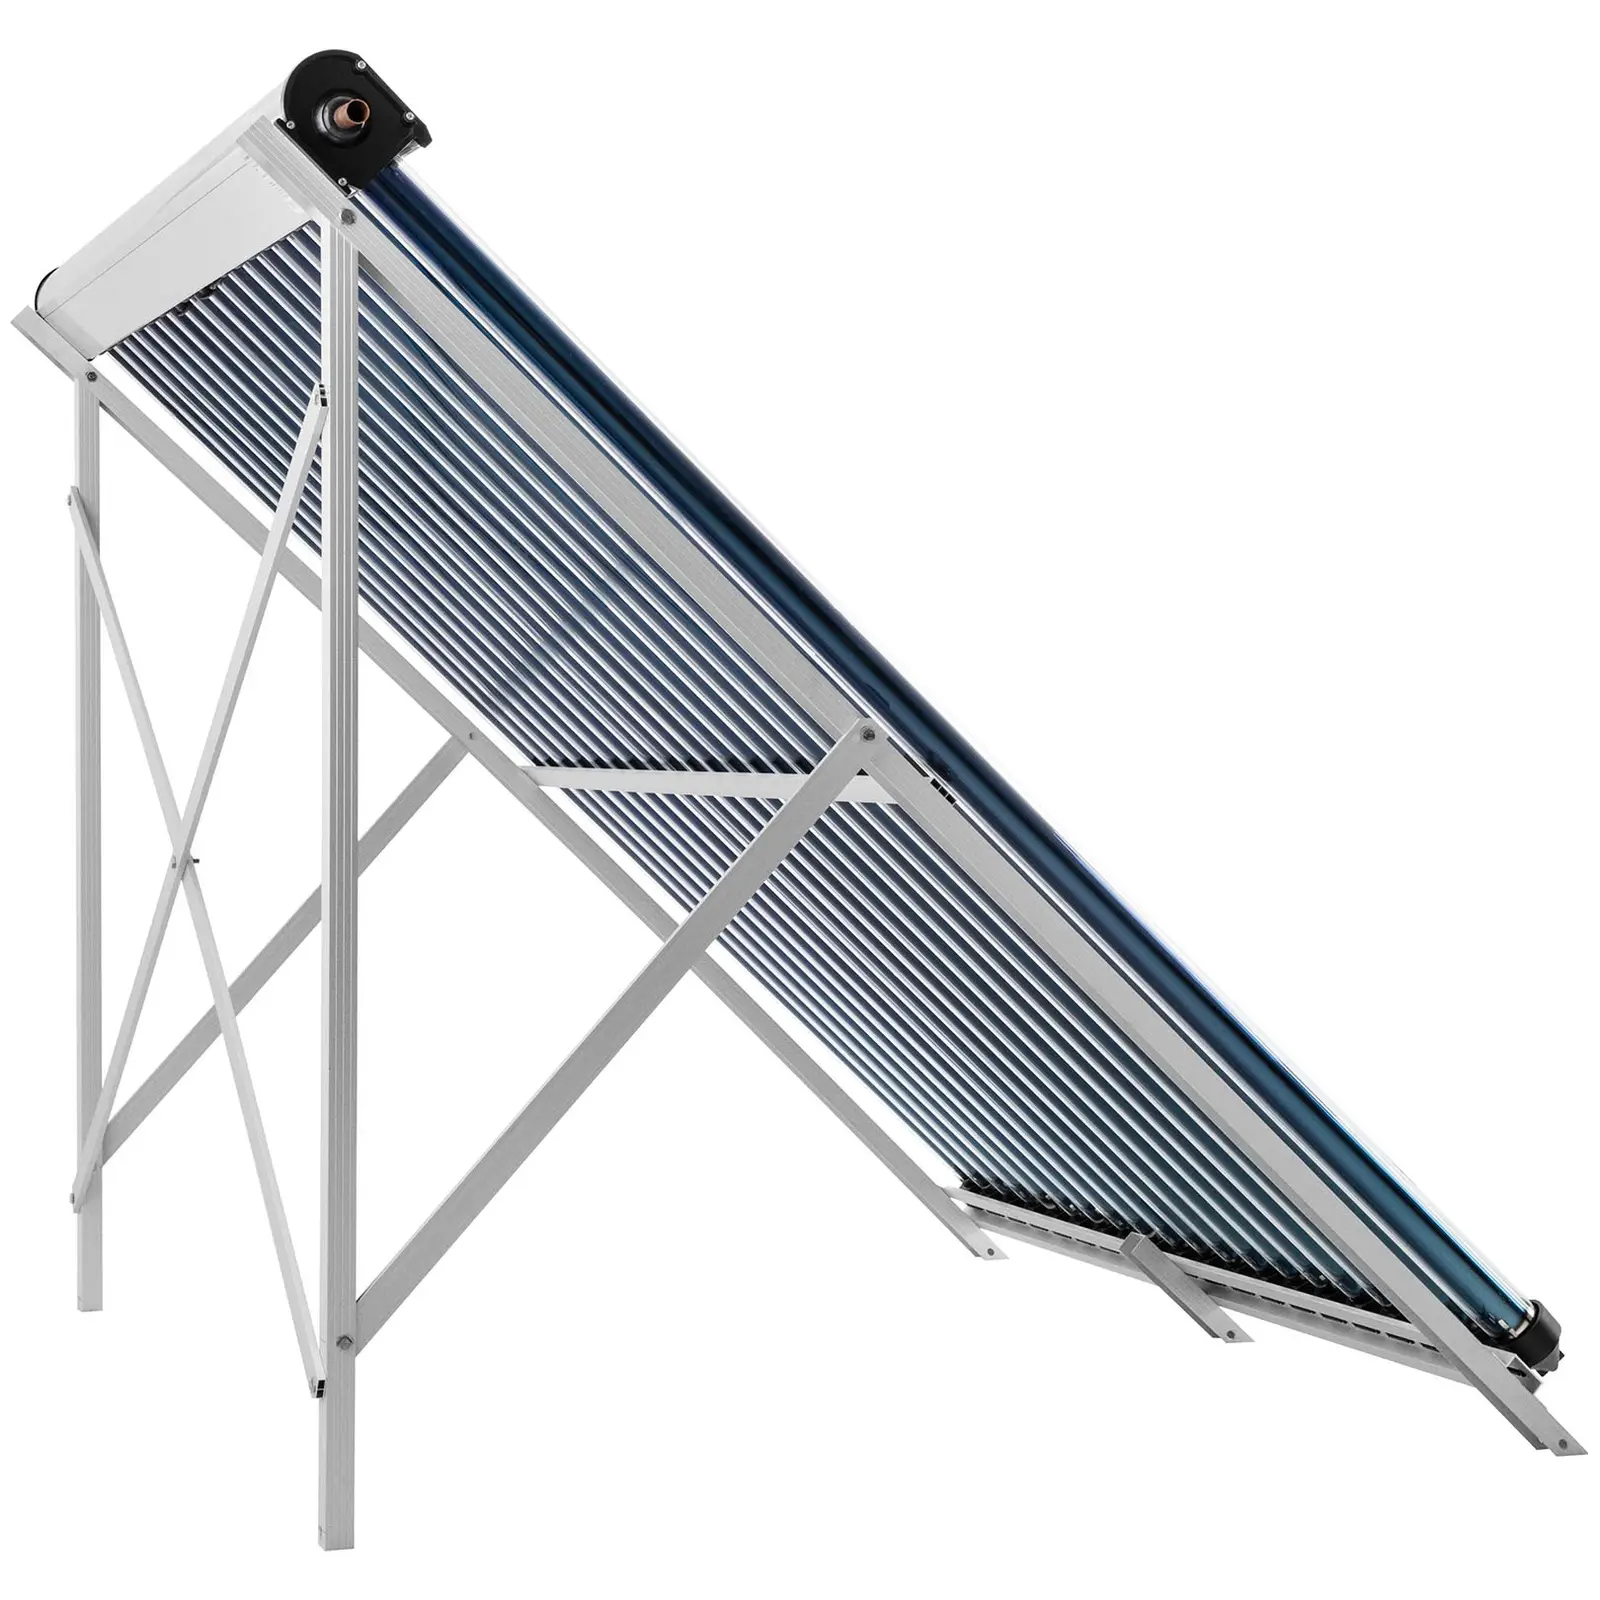 Rúrkový kolektor - solárna tepelná energia - 20 trubíc - 200 l - 1.6 m² - -45 – 90 °C